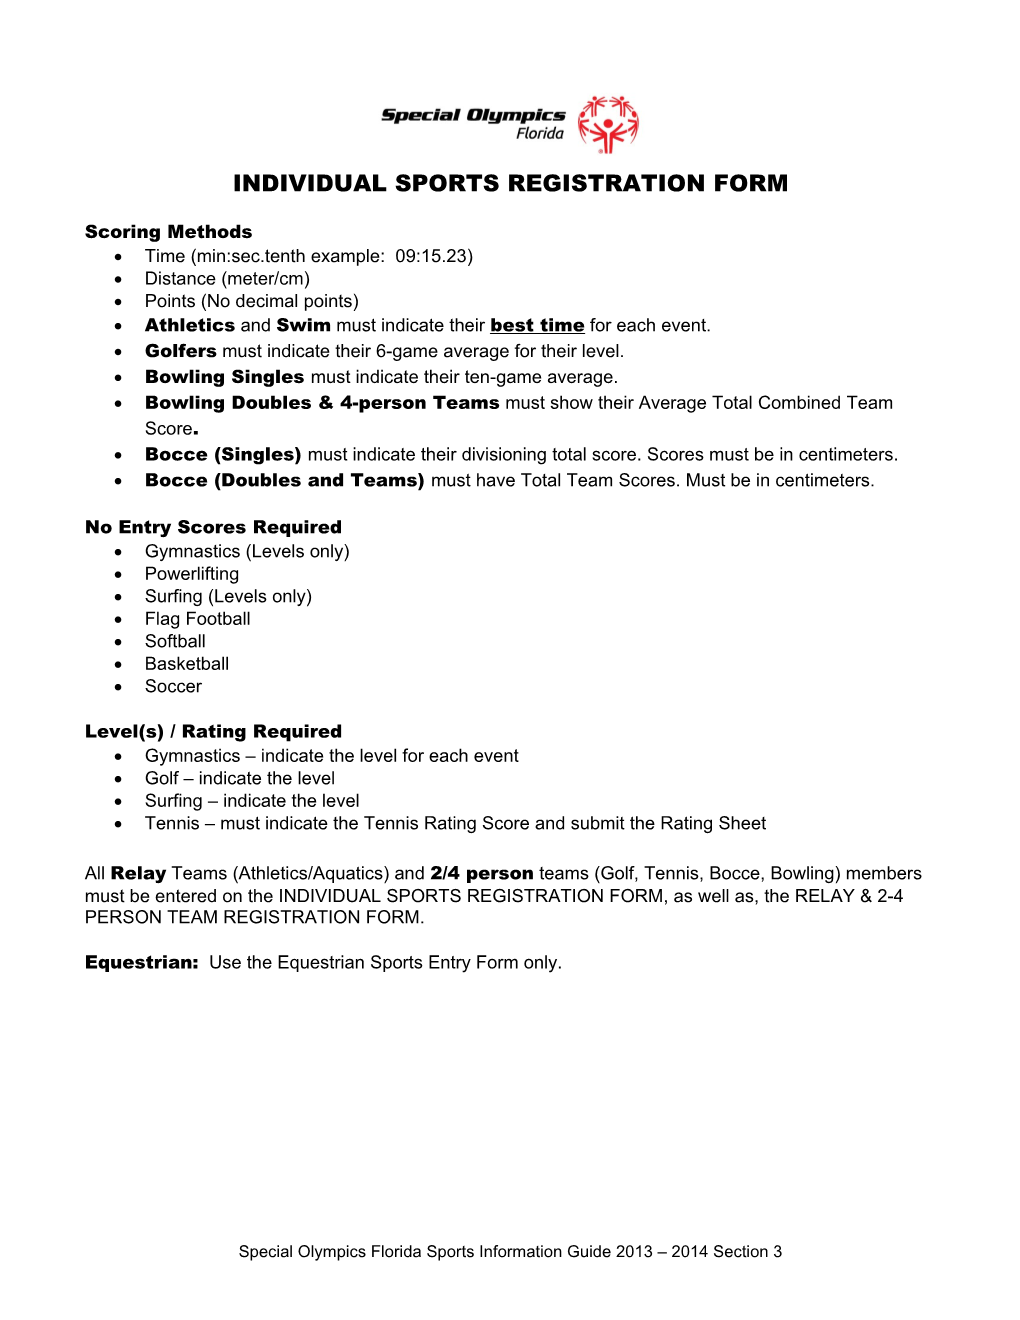 Sofl Athlete Games Registration Form